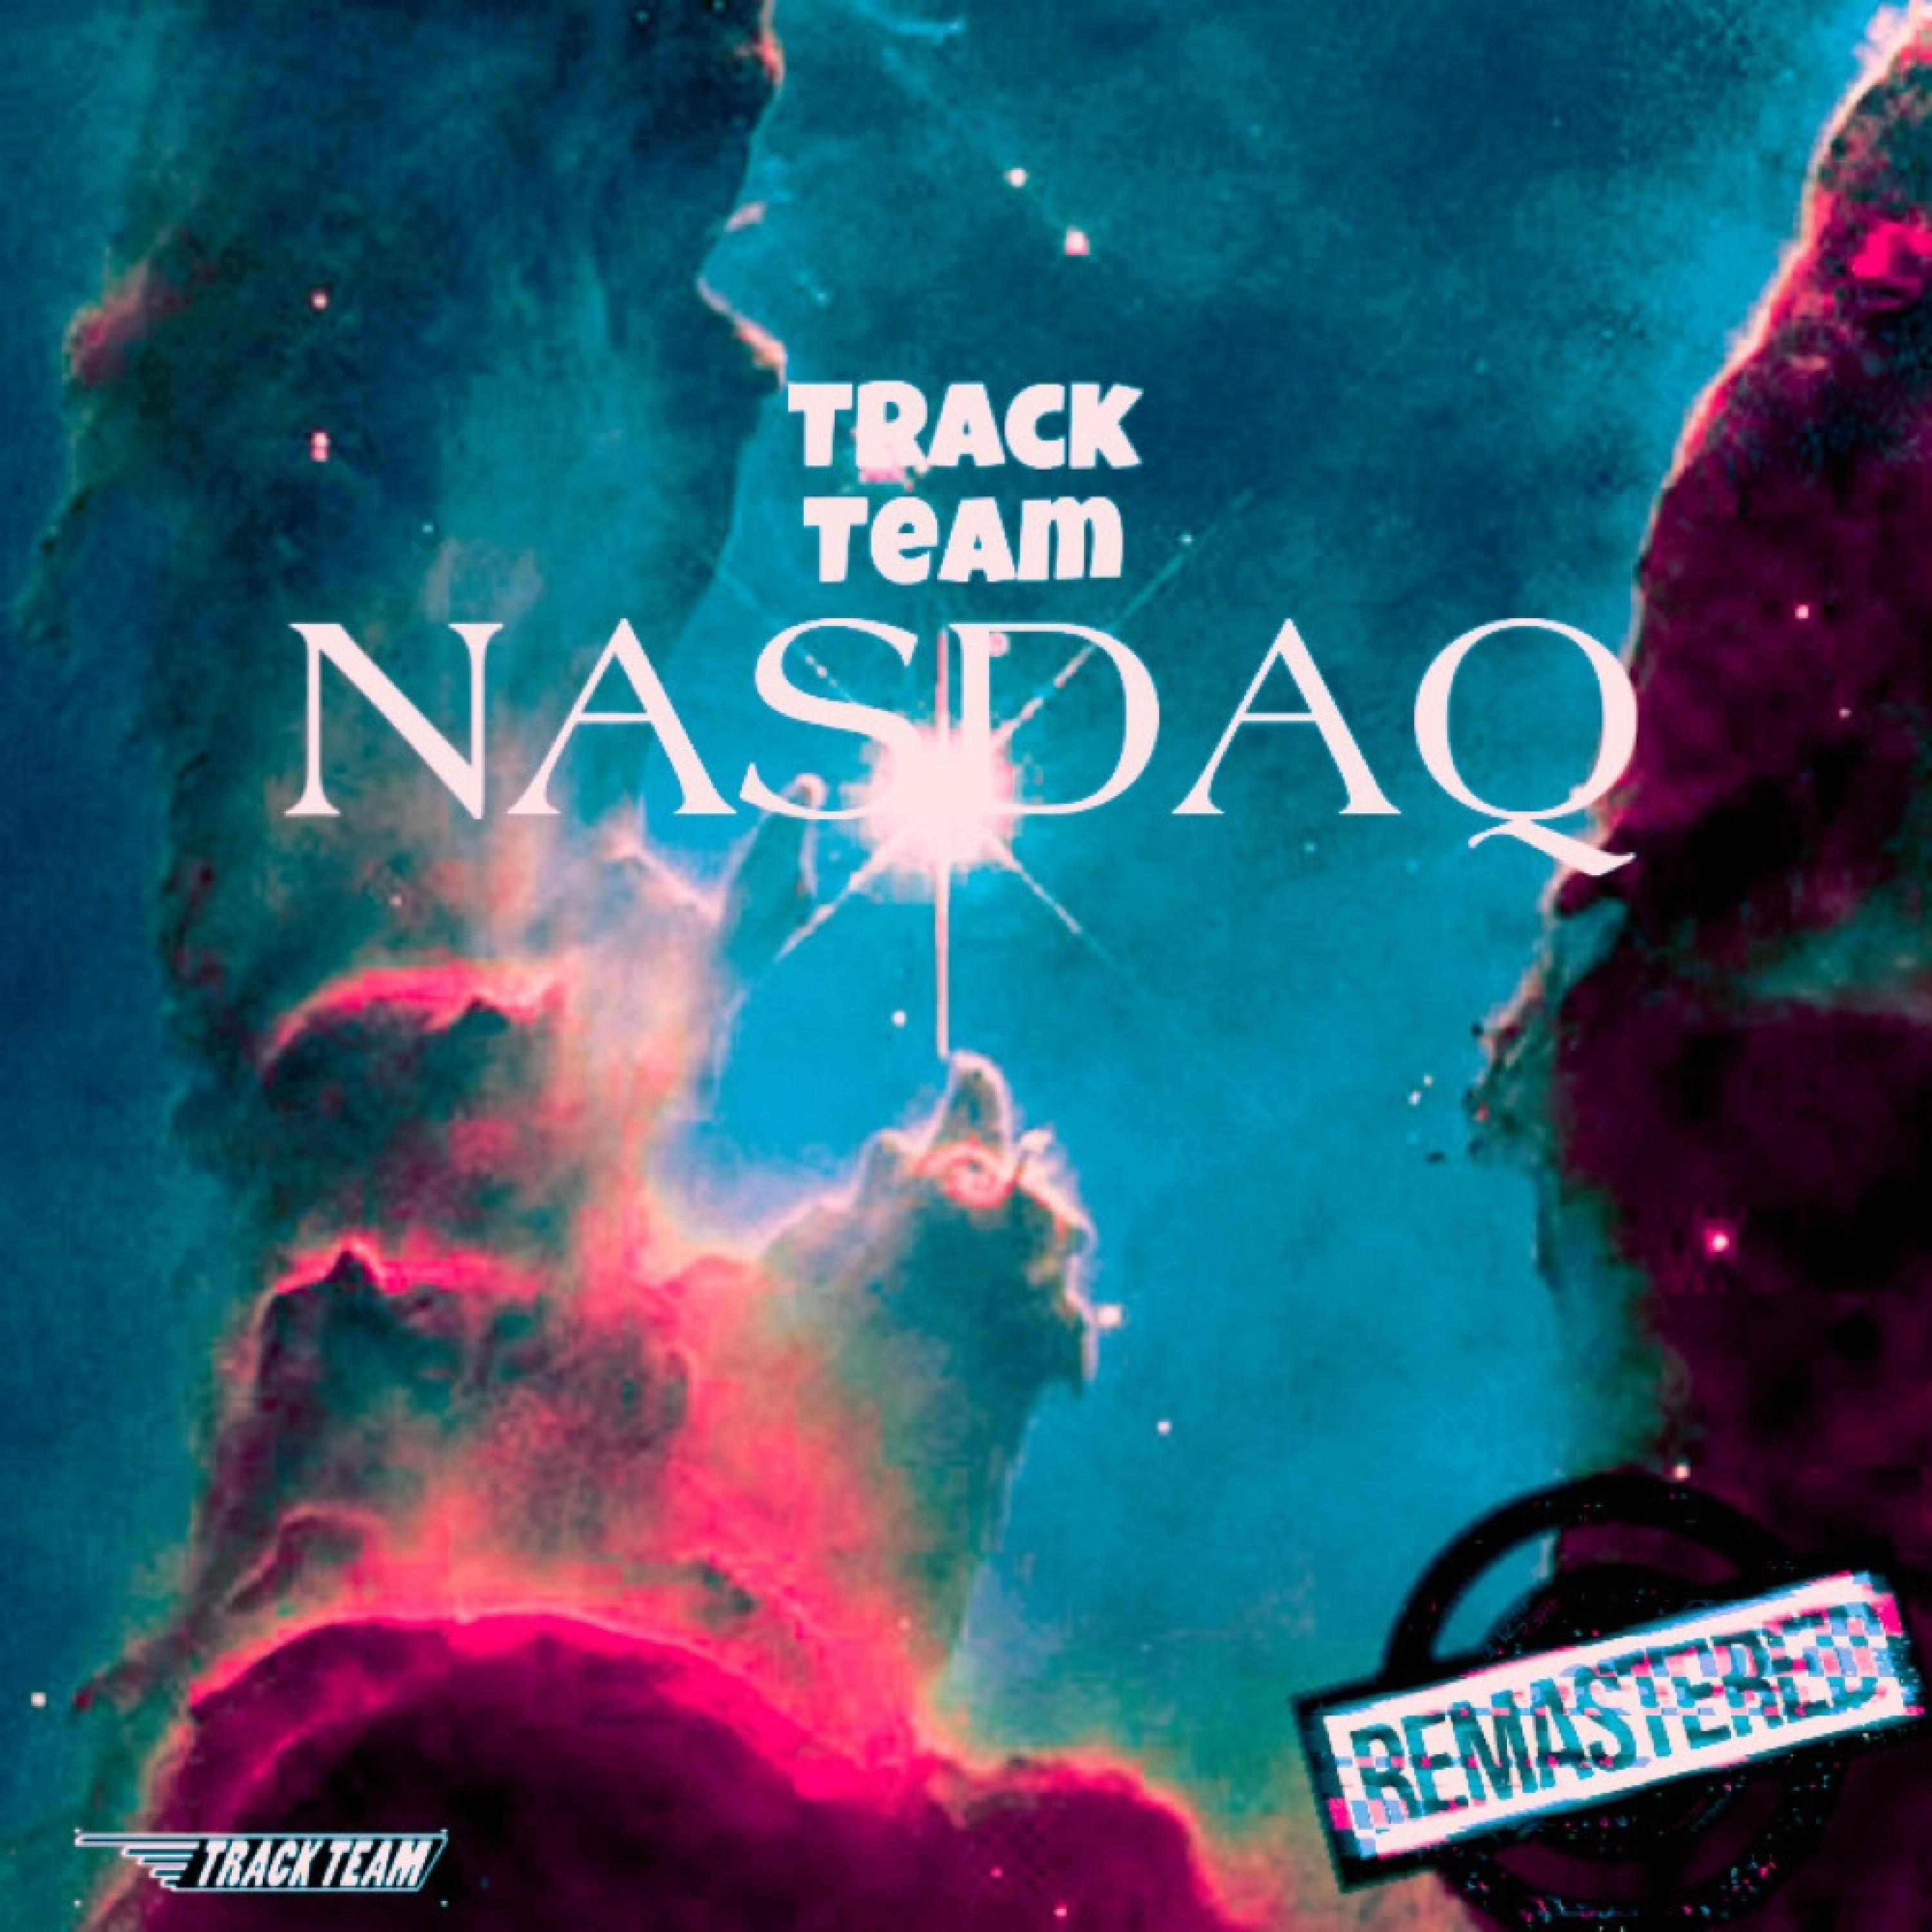 Track Team - NASDAQ